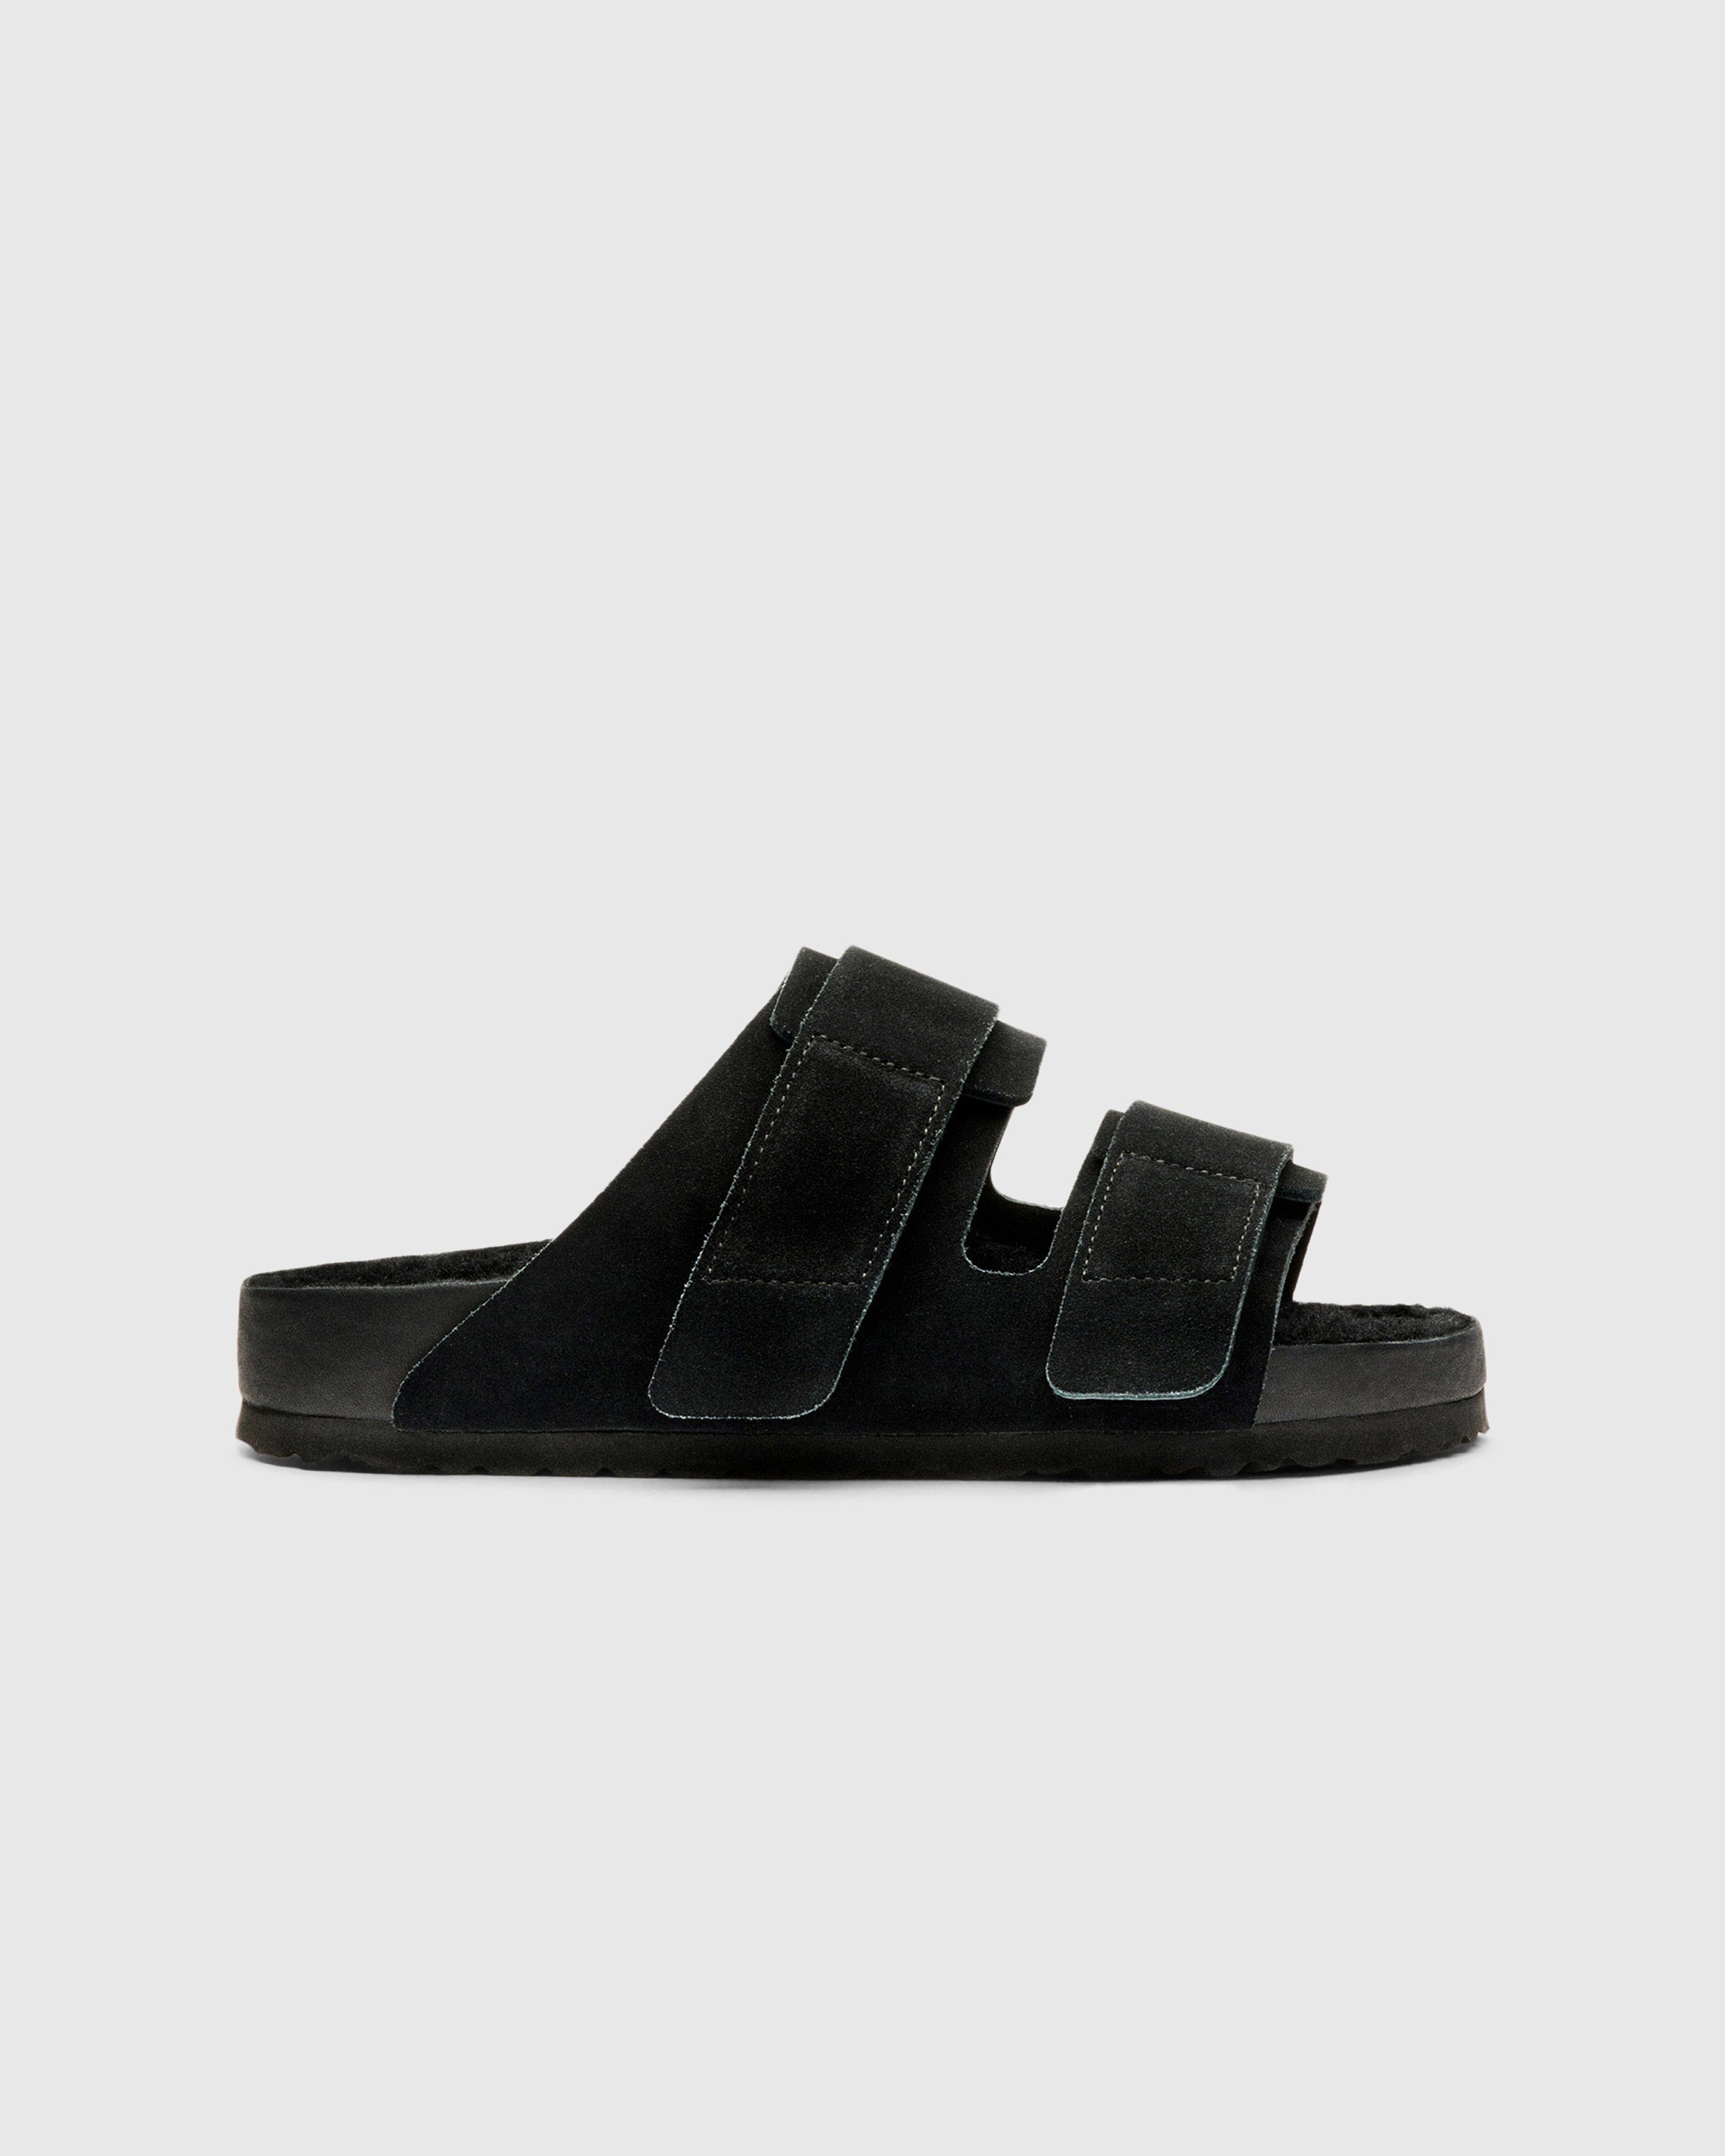 Birkenstock x Tekla - Shearling Uji Slate/Black - Footwear - Black - Image 1